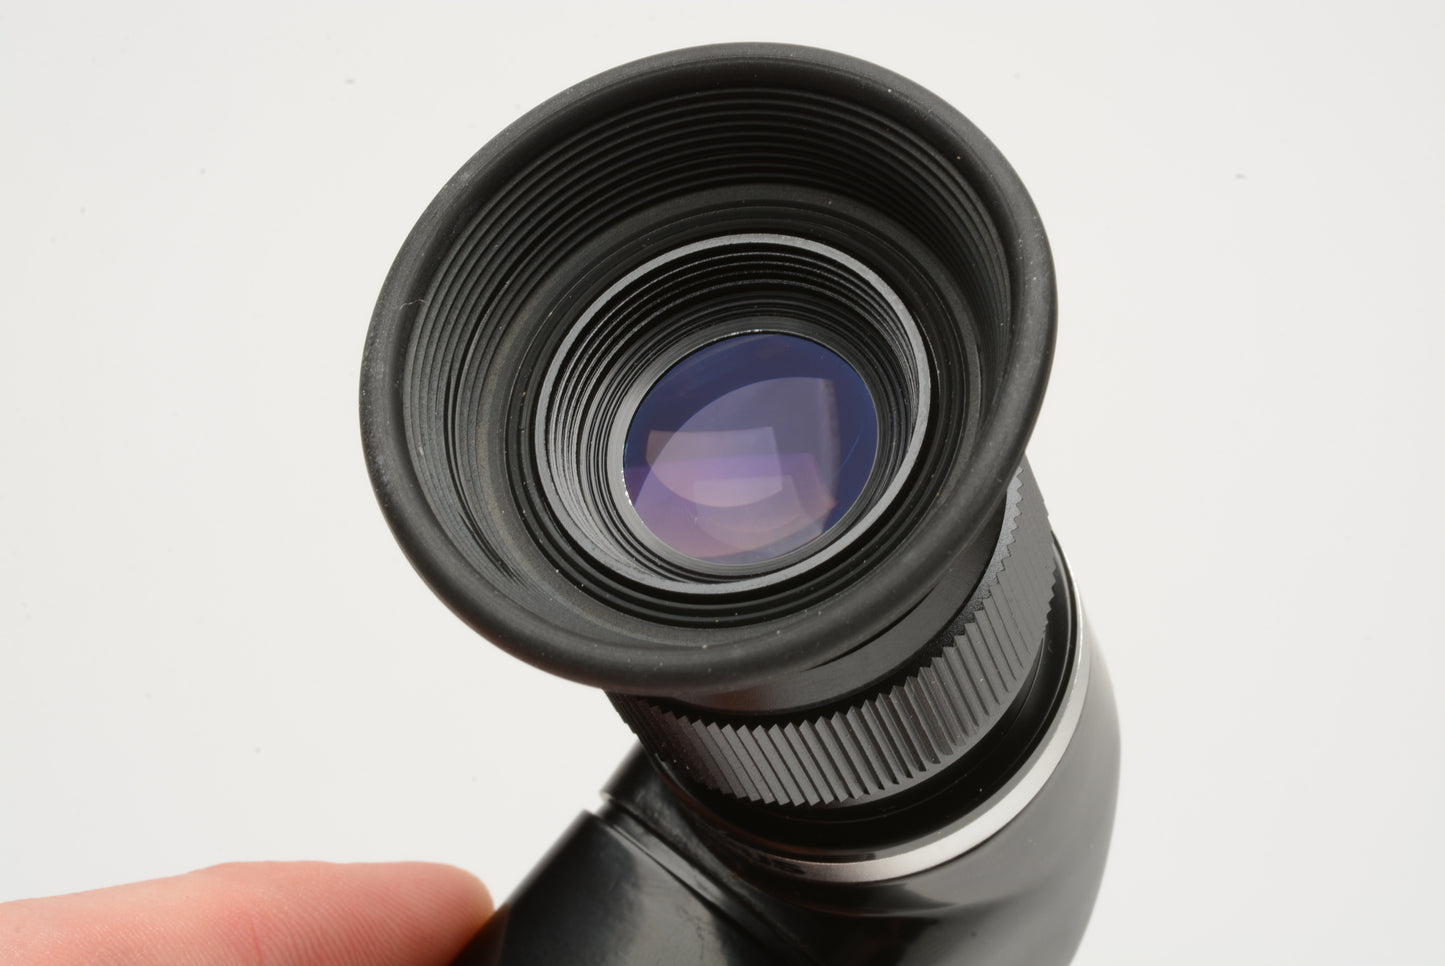 Olympus Varimagni angled viewfinder 1.2X - 2.5X, in case, w/eyecup, very clean